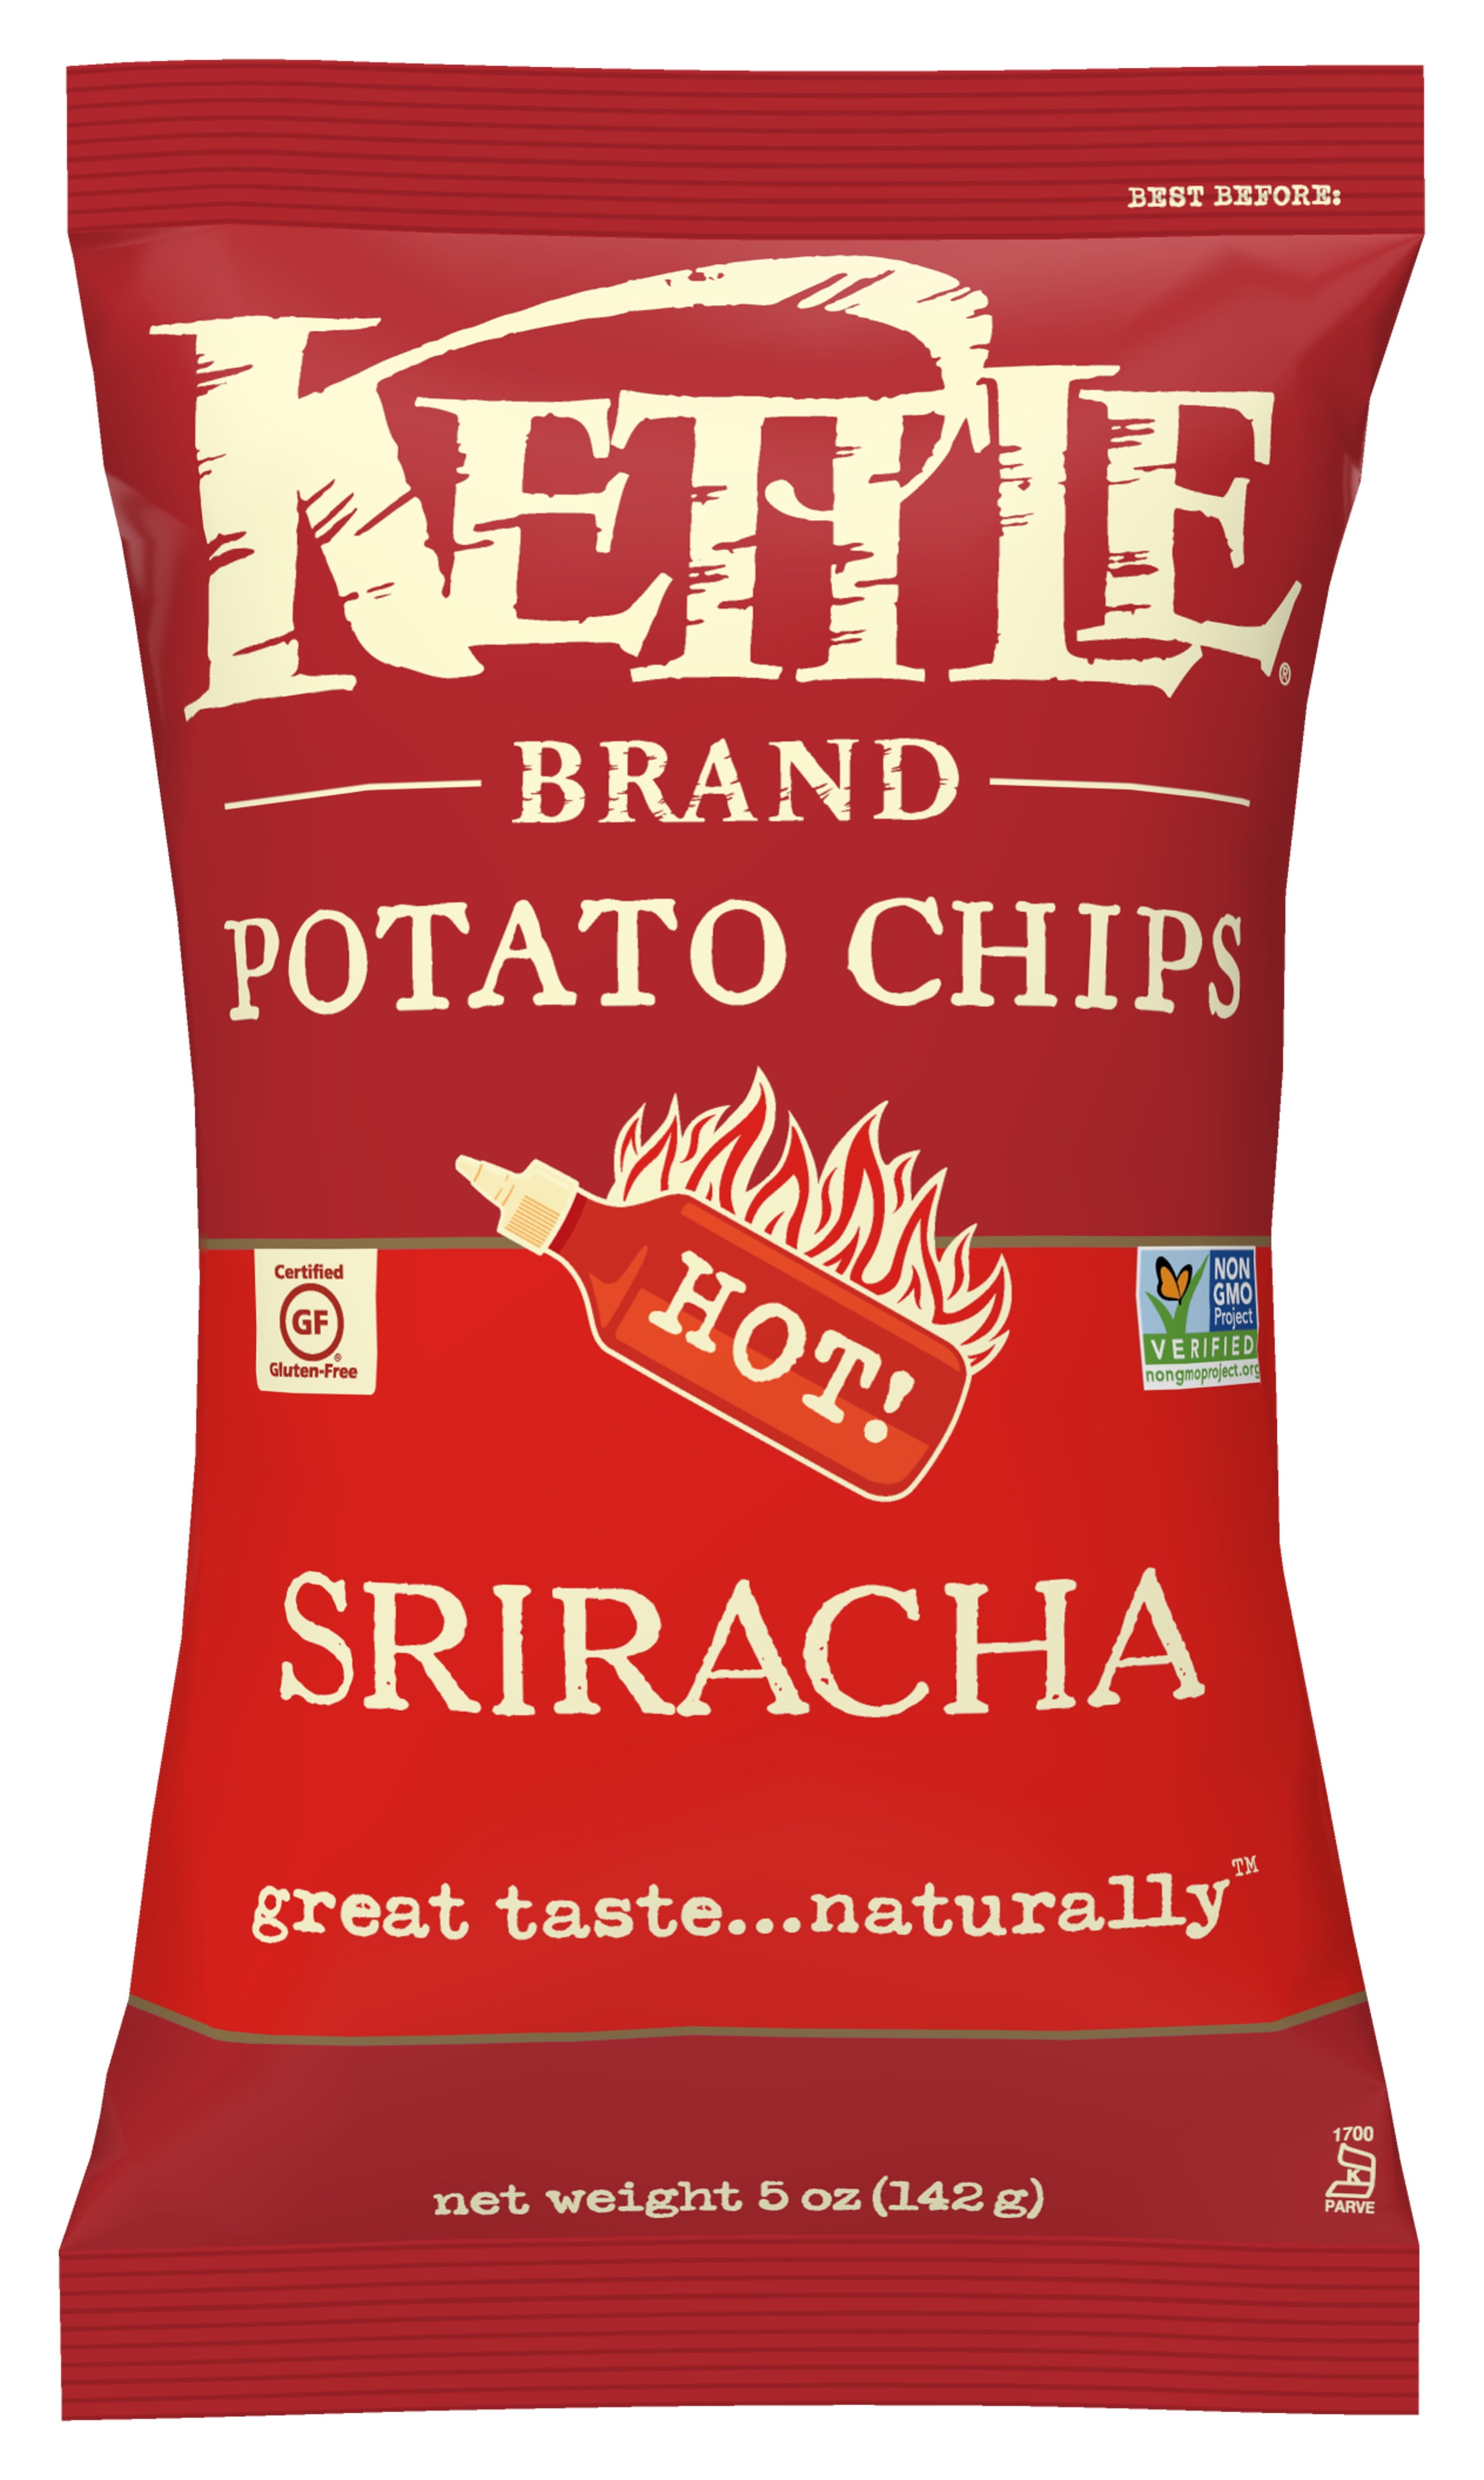 Kettle Brand Potato Chips, Sriracha, 5 Oz